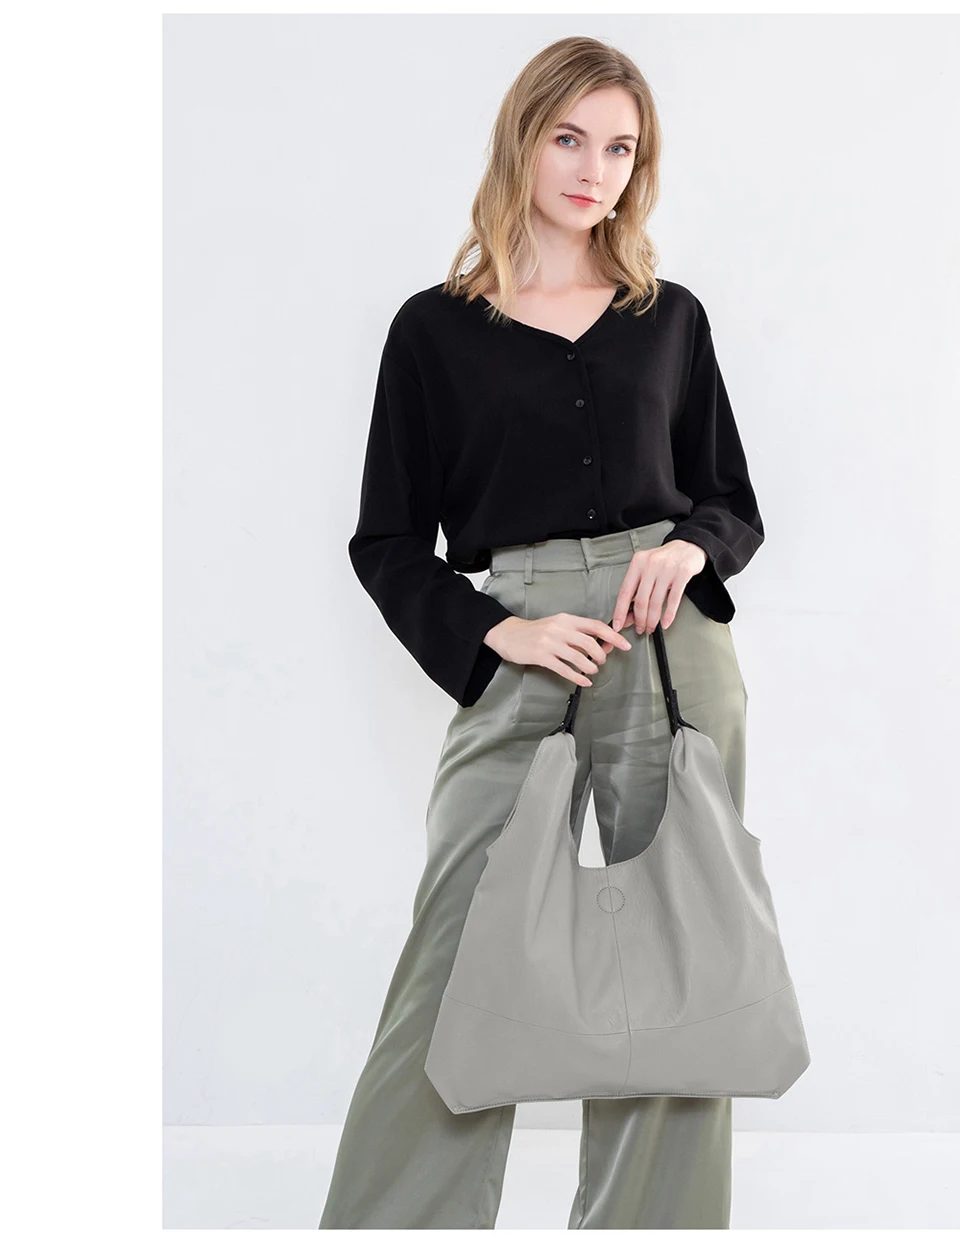 ZROM курьерская женская сумка из натуральной кожи модные классические сумки в стиле "Ретро" Большая емкость женская сумка на плечо женские хозяйственные сумки